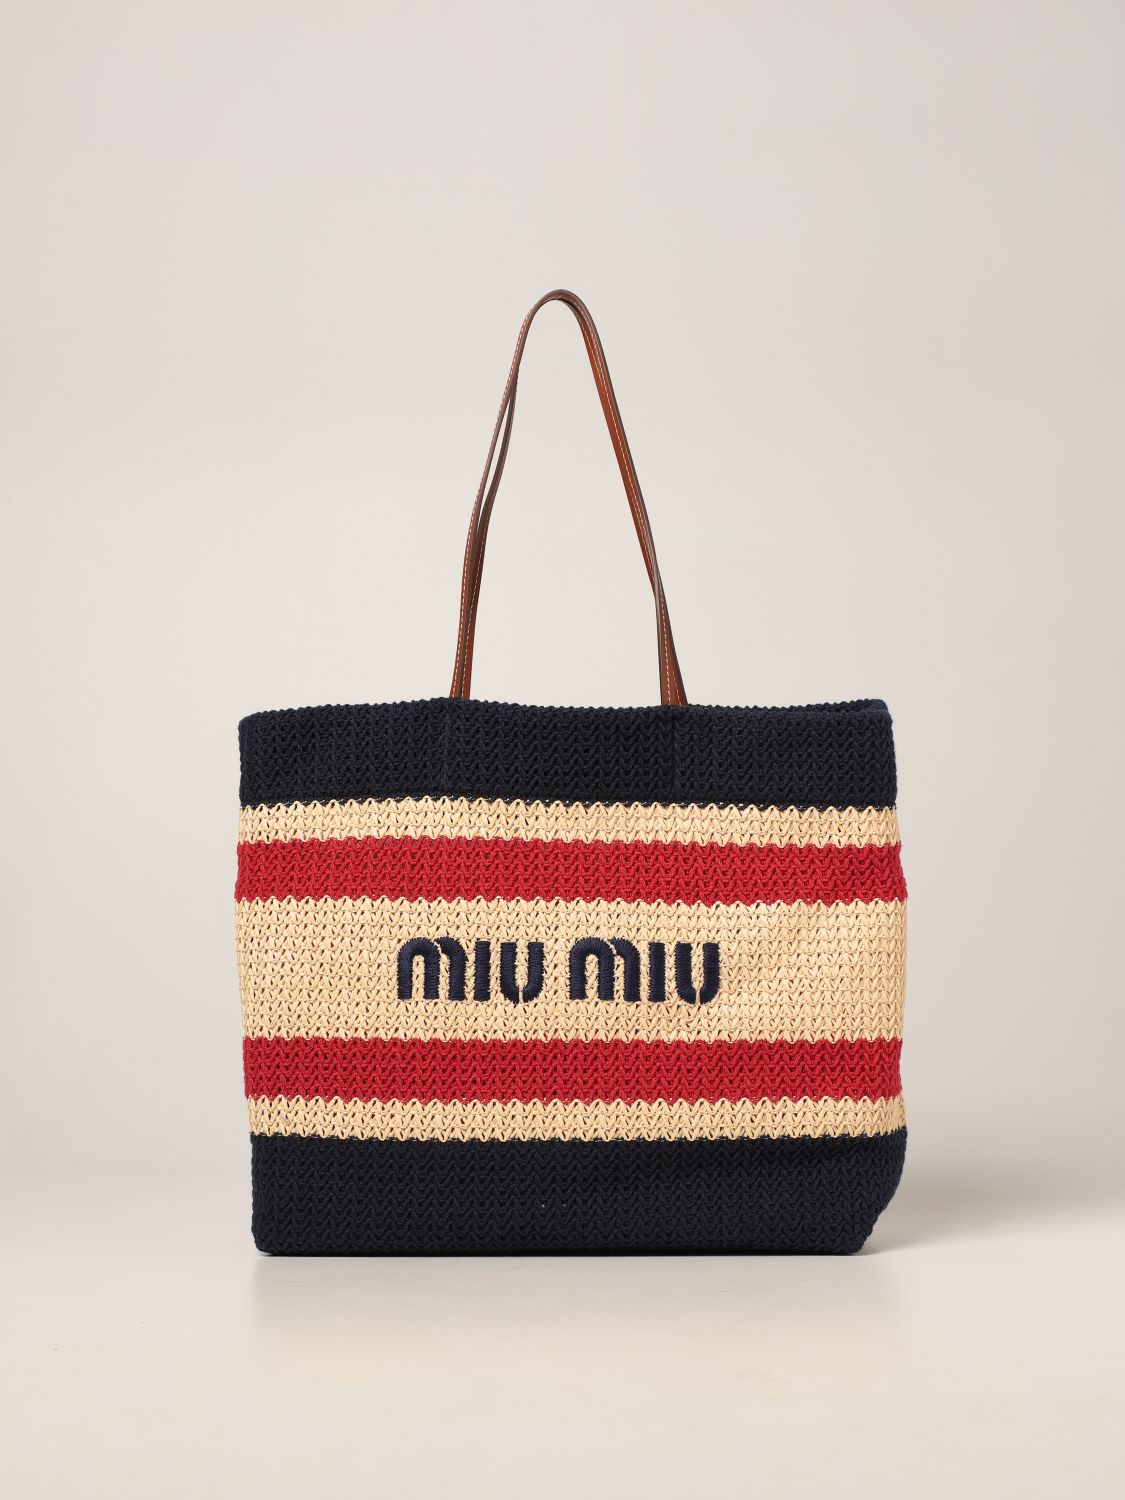 MIU MIU: shoulder bag in woven raffia and cotton - Natural | Miu Miu ...